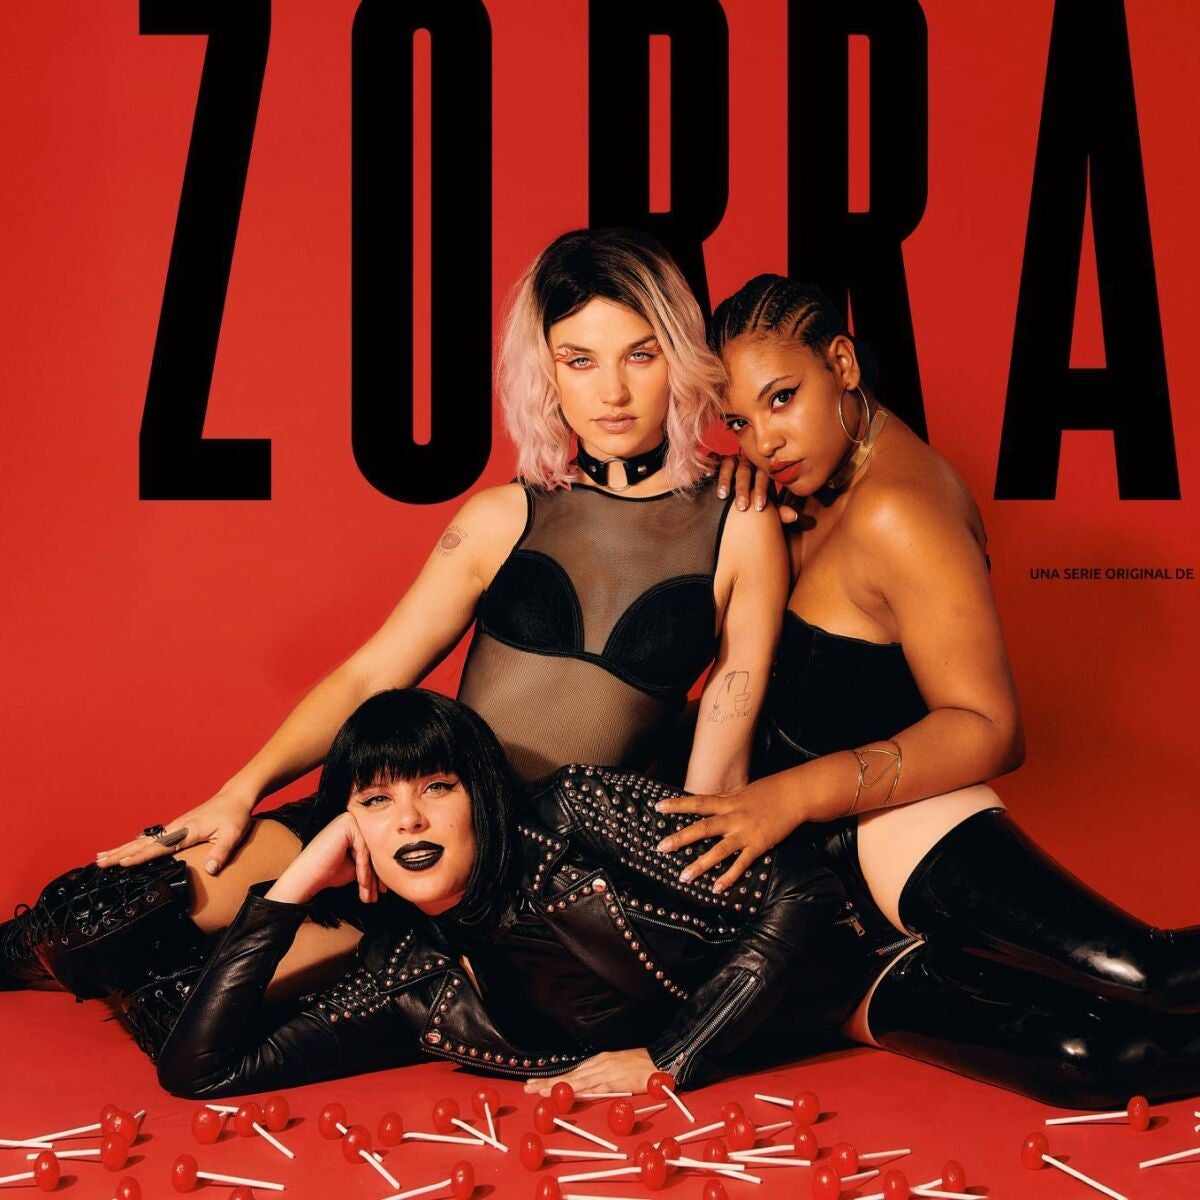 Así es Zorras, la serie con Andrea Ros, Tai Fati y Mirela Balic sobre la revolución sexual de tres mujeres que llega en verano imagen